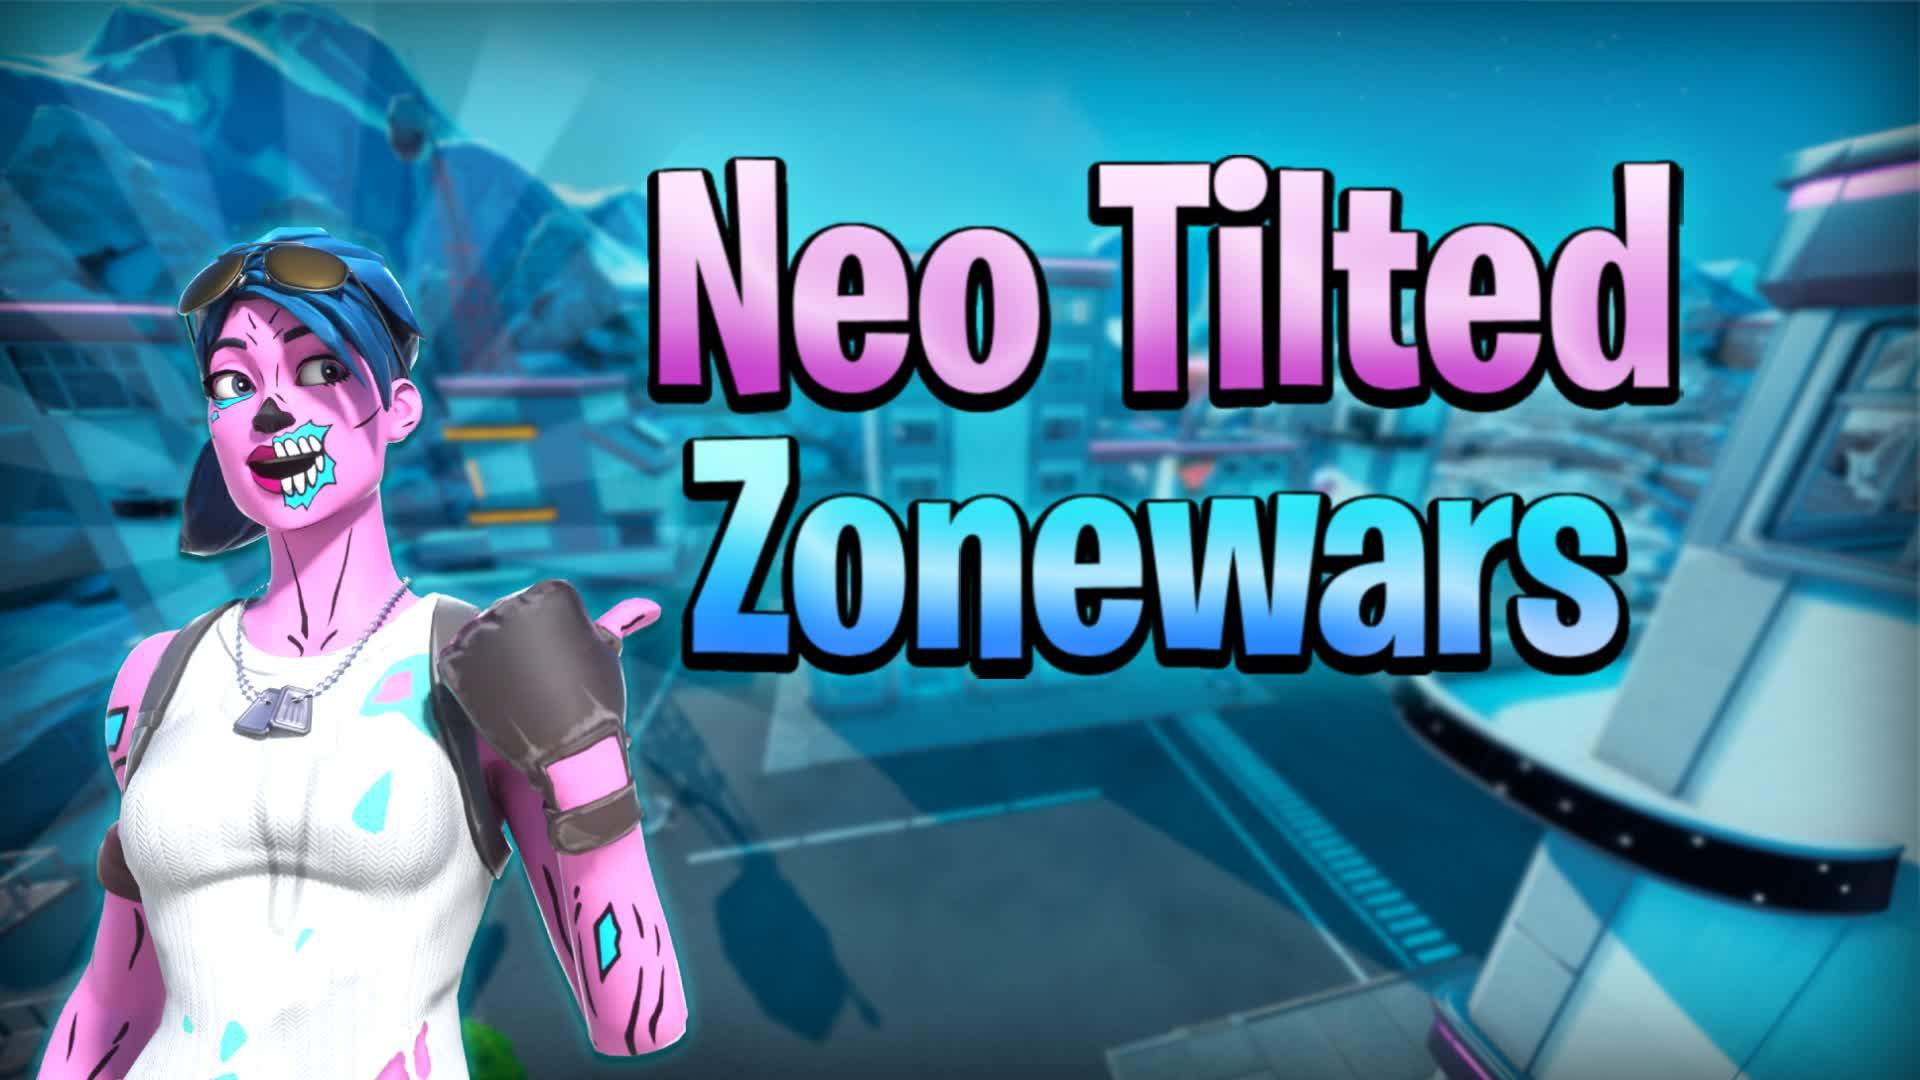 Neo Tilted Zonewars